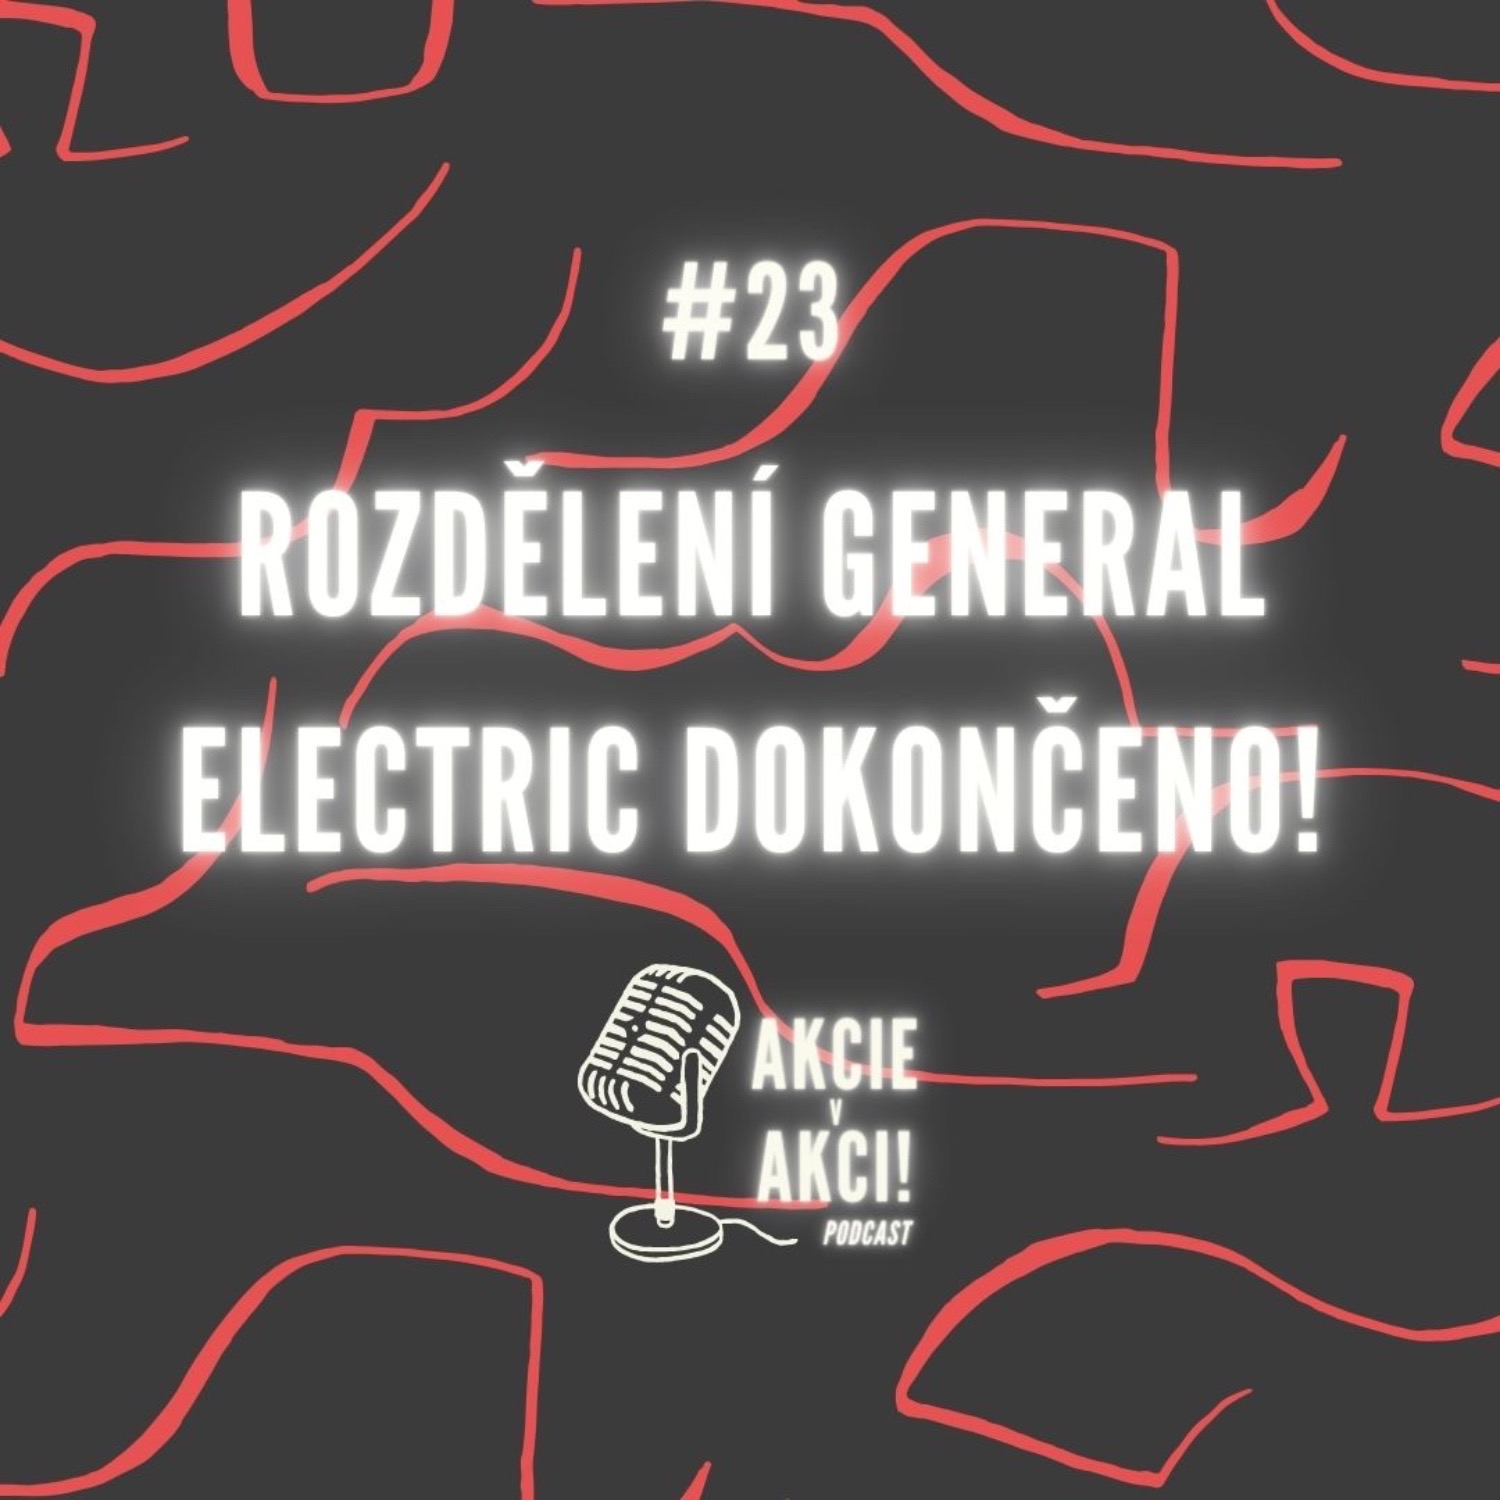 #23 ROZDĚLENÍ GENERAL ELECTRIC DOKONČENO!